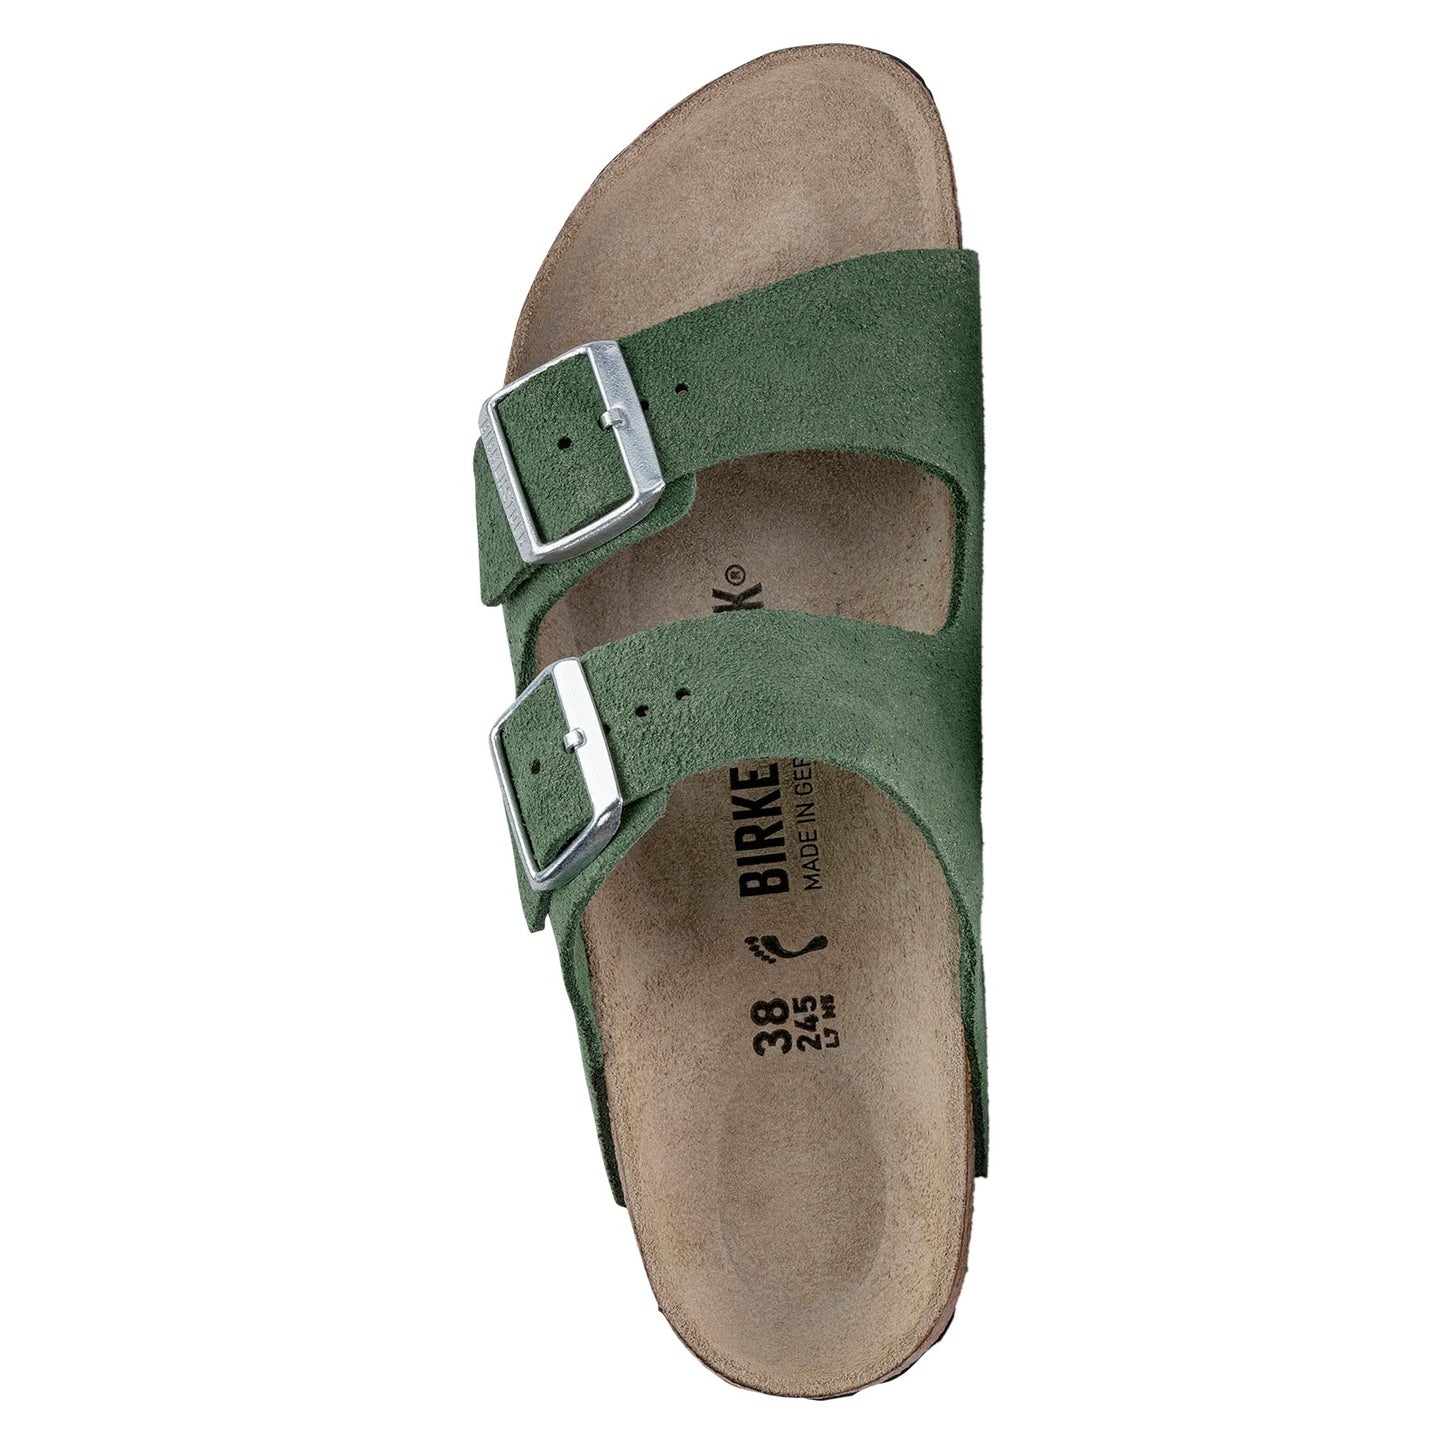 Peltz Shoes  Women's Birkenstock Arizona Sandal - Narrow Width THYME 1023 543 N